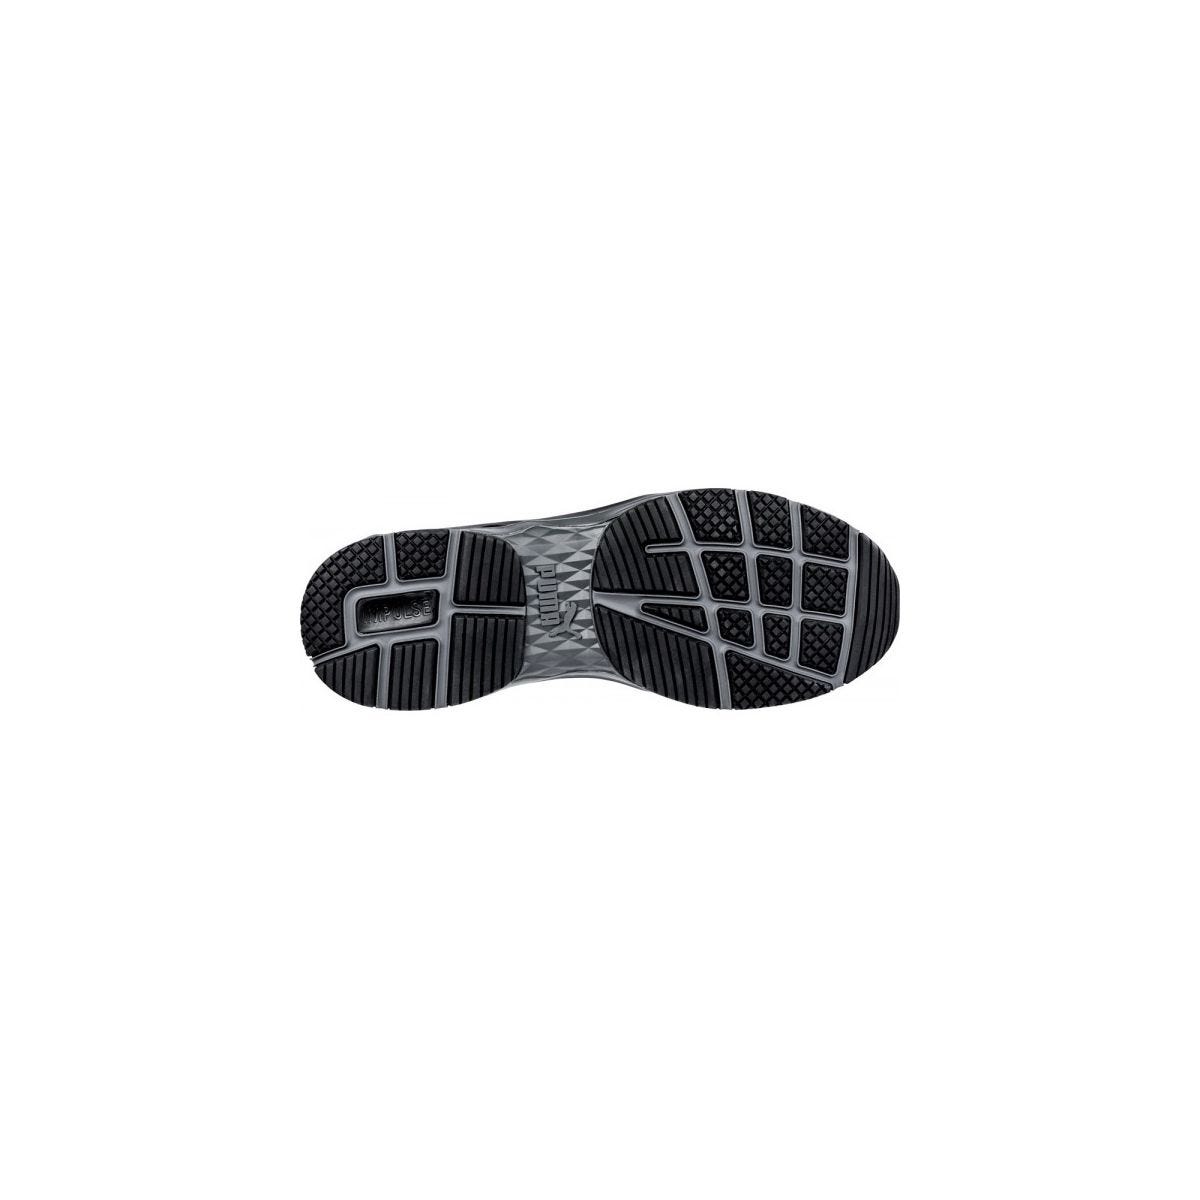 Chaussures de sécurité Velocity 2.0 Noir Low S3 - Puma - Taille 47 4